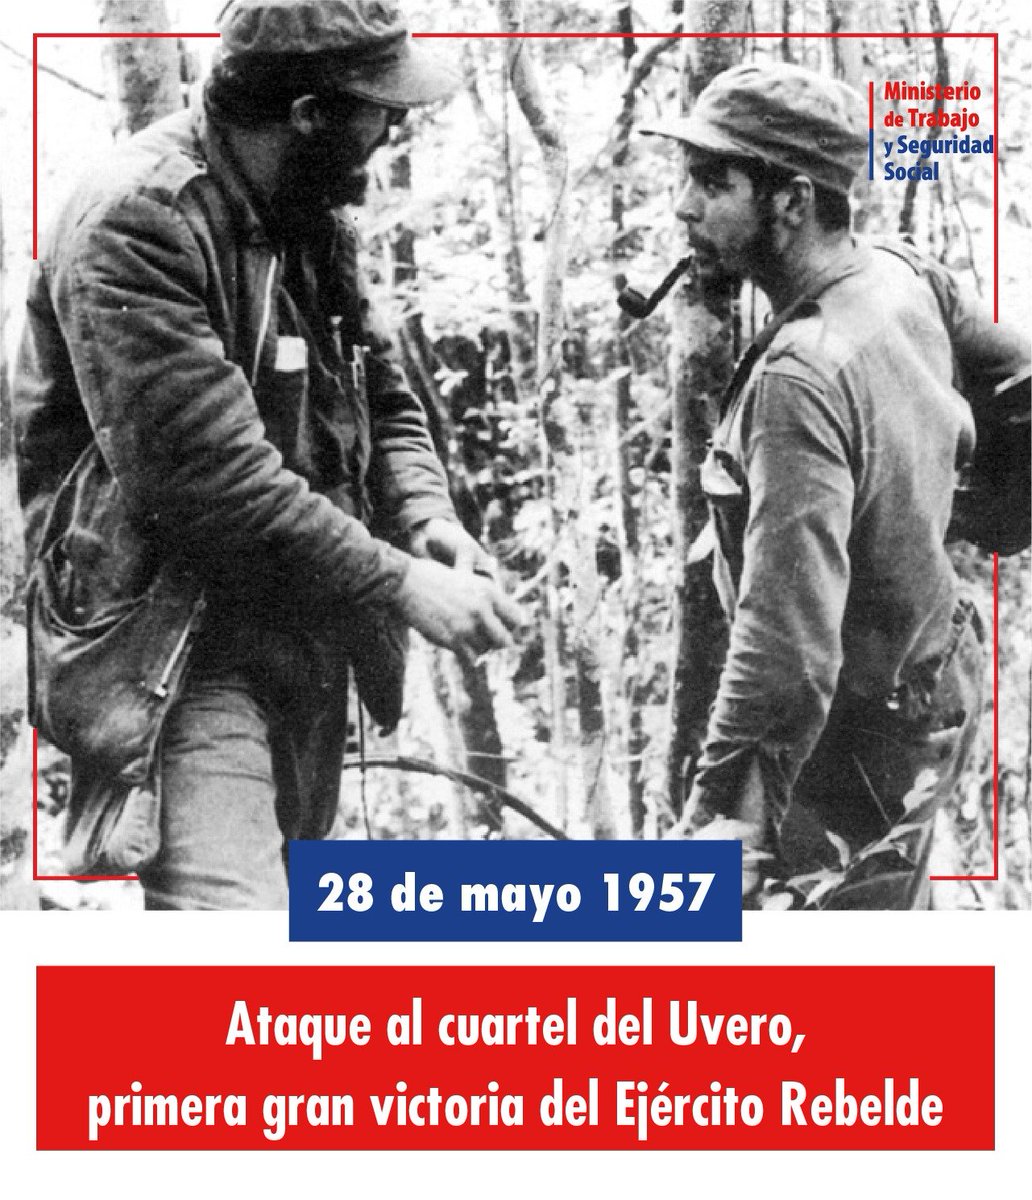 Fidel sobre el combate del Uvero: “Y fue necesario que los compañeros hiciesen un esfuerzo supremo para librar aquel combate que duró tres horas y que finalizó con la victoria de nuestras fuerzas” #CubaViveEnSuHistoria #EstaEsLaRevolución